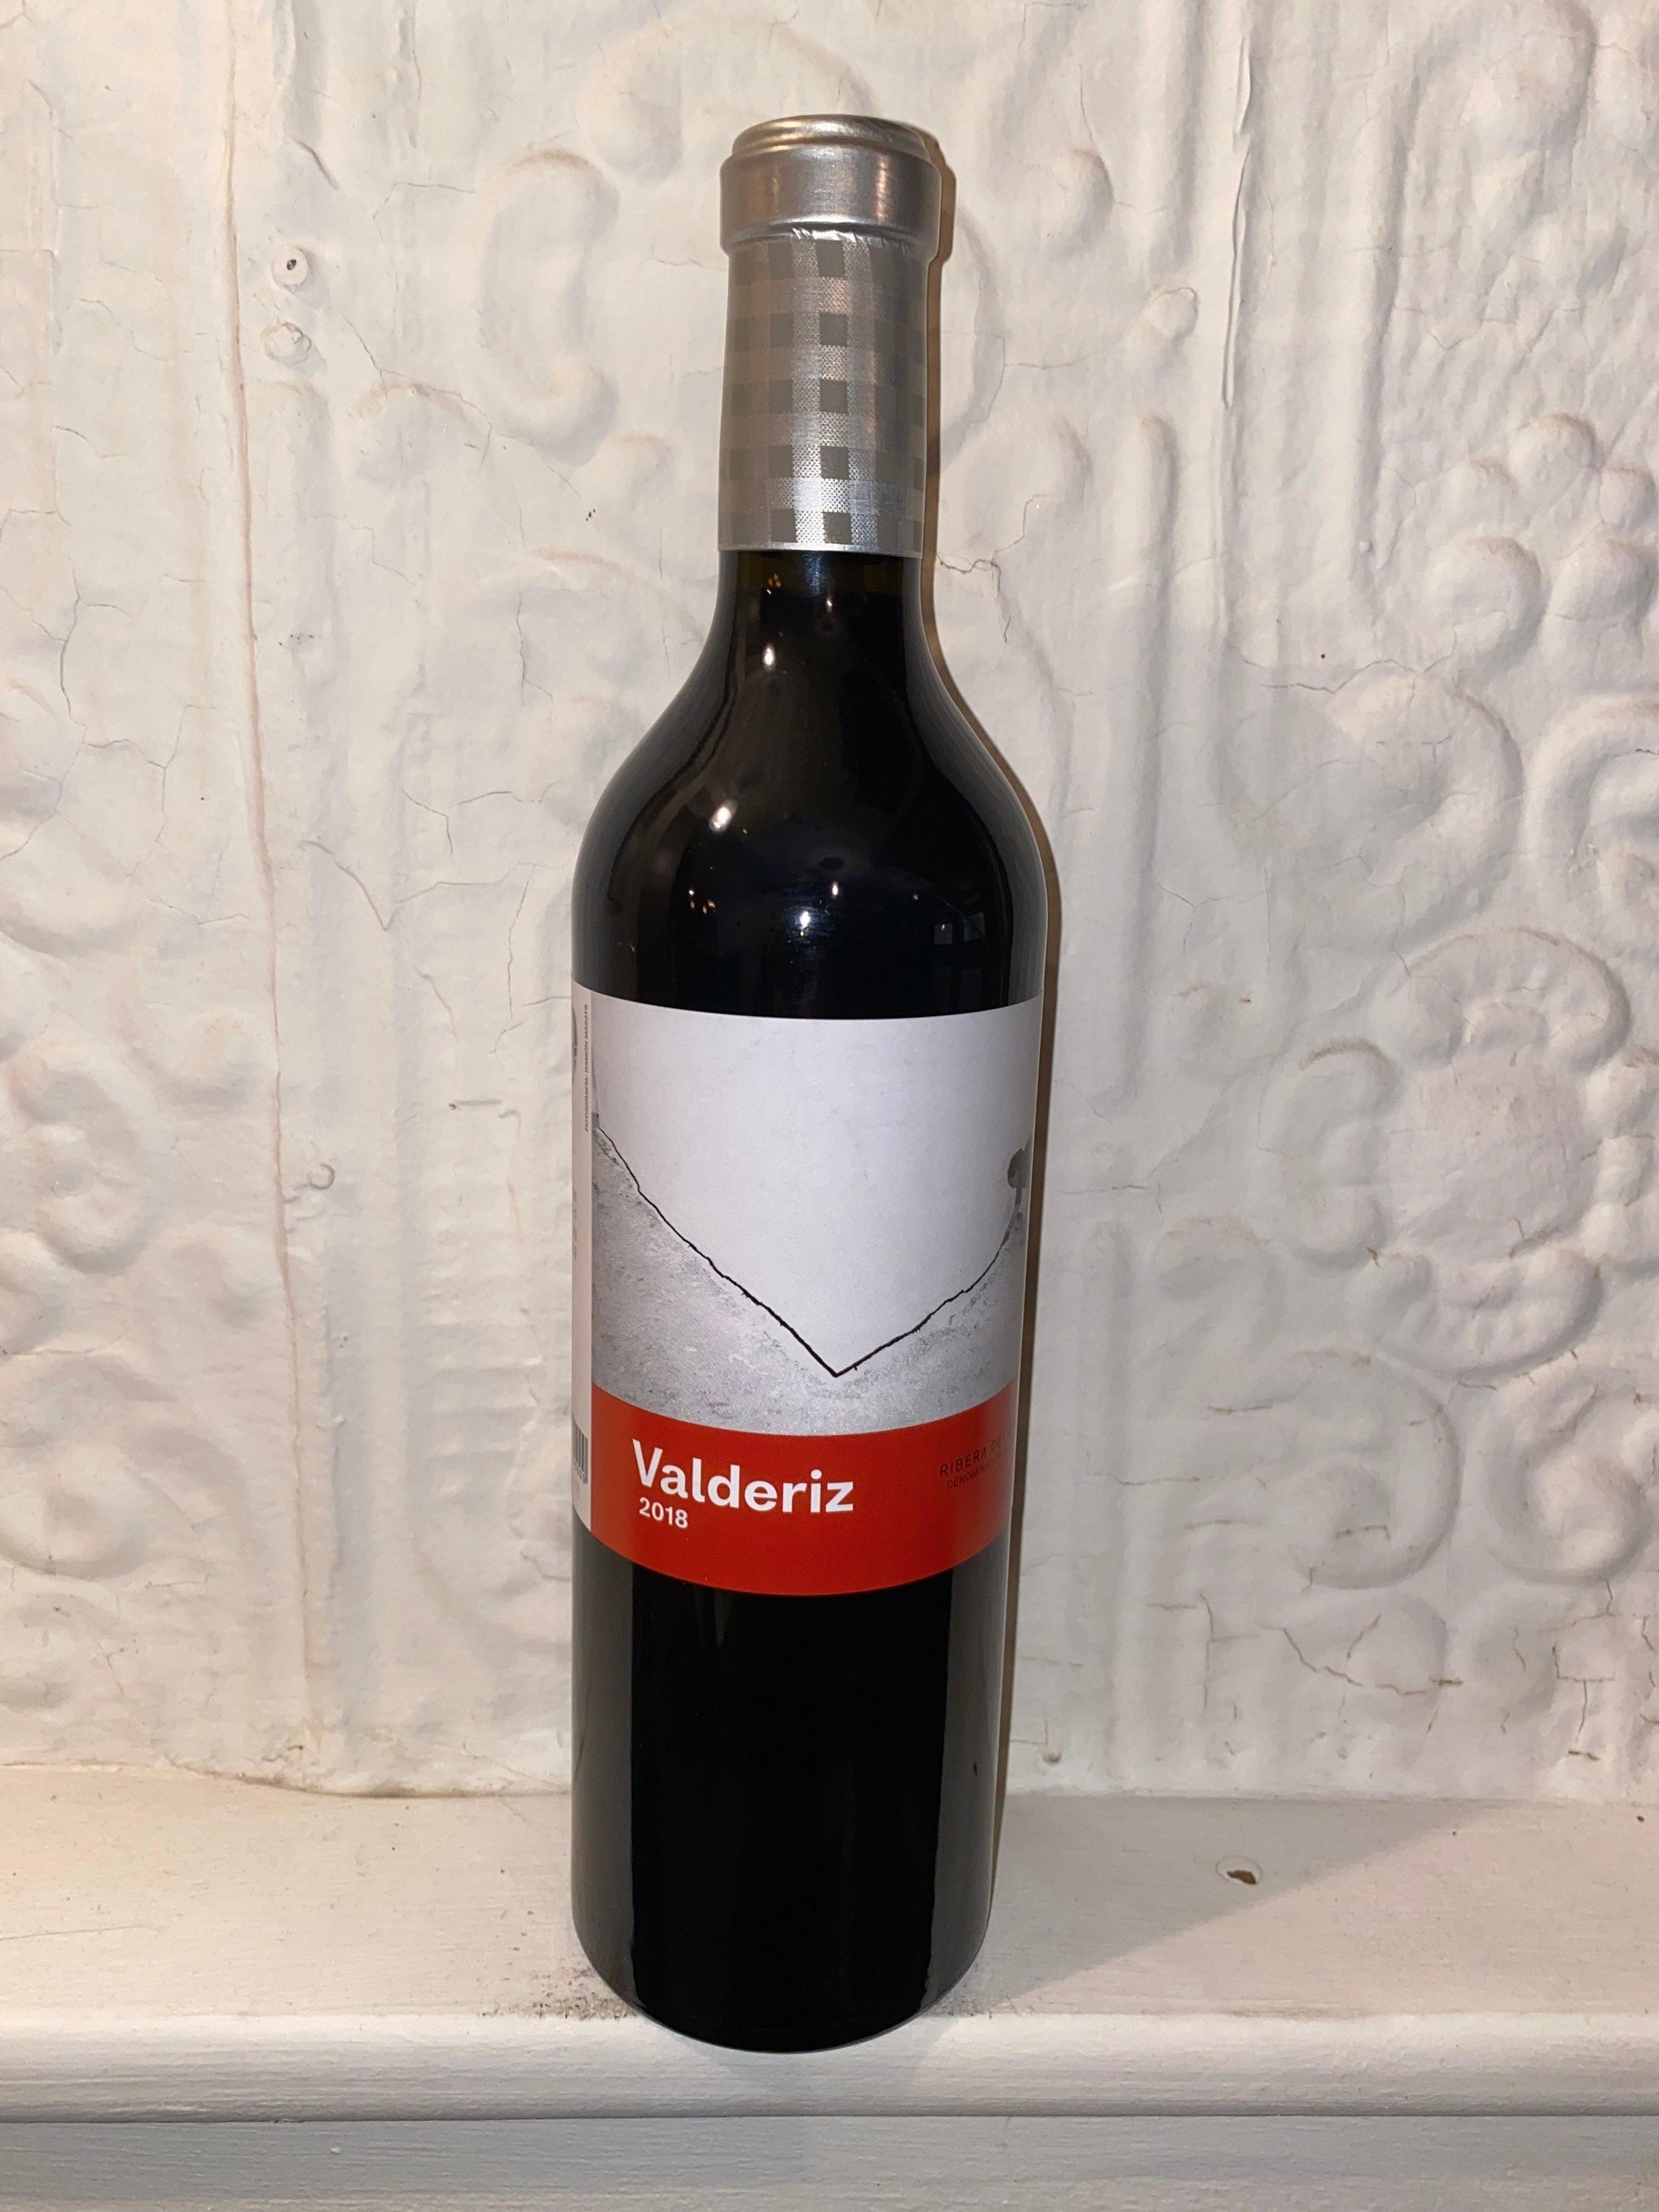 Valderiz, Bodegas y Vinedos Valderiz 2018 (Ribera del Duero, Spain)-Wine-Bibber & Bell